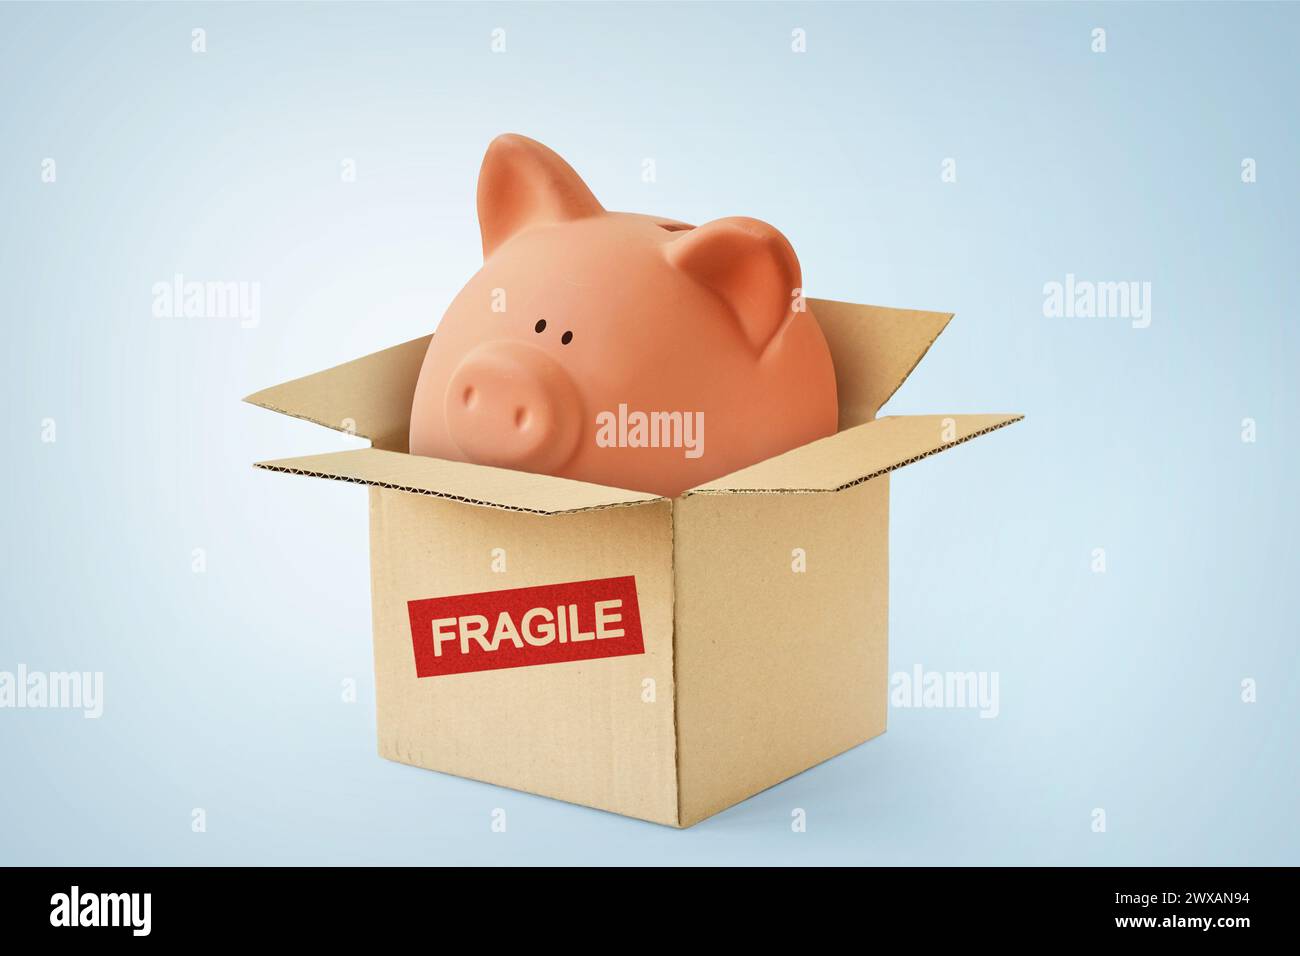 Tirelire dans une boîte en carton avec le mot fragile - concept d'épargne, de protection de l'argent et de sécurité financière Banque D'Images